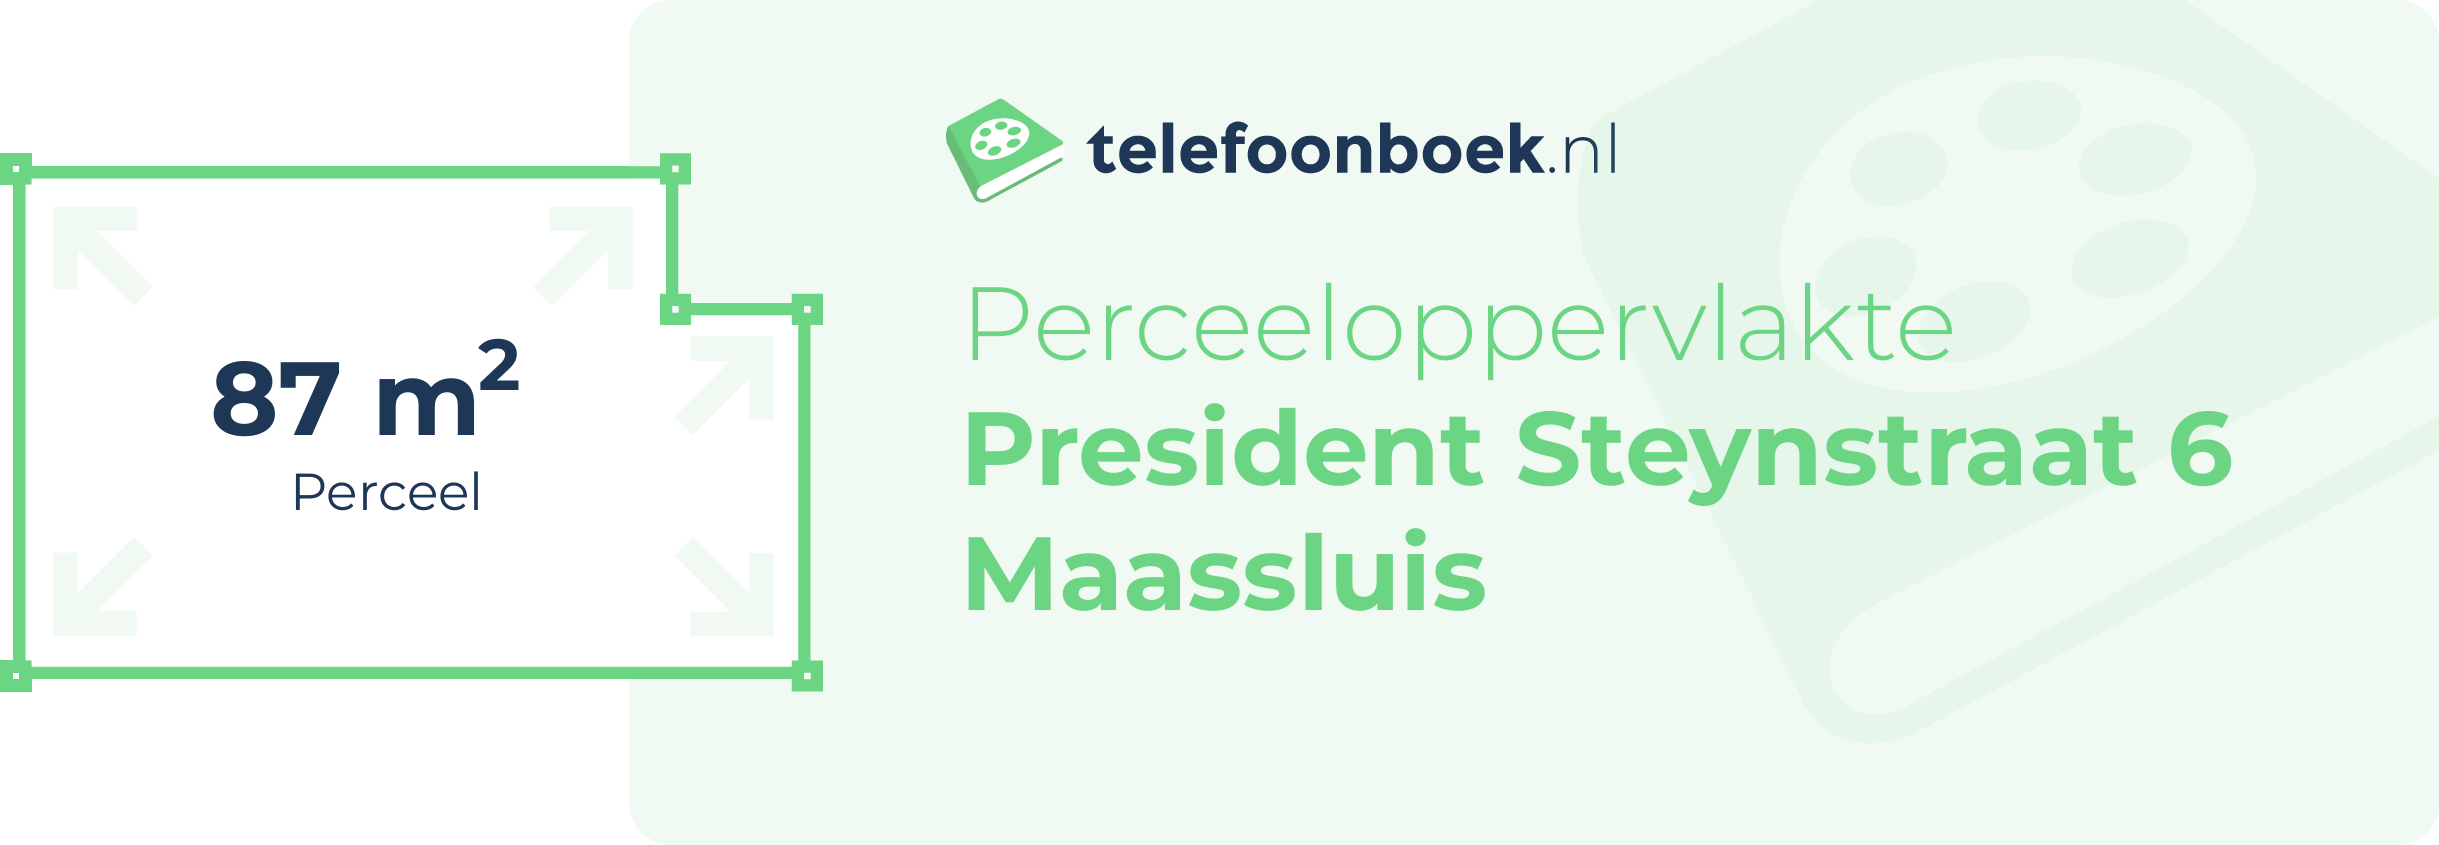 Perceeloppervlakte President Steynstraat 6 Maassluis